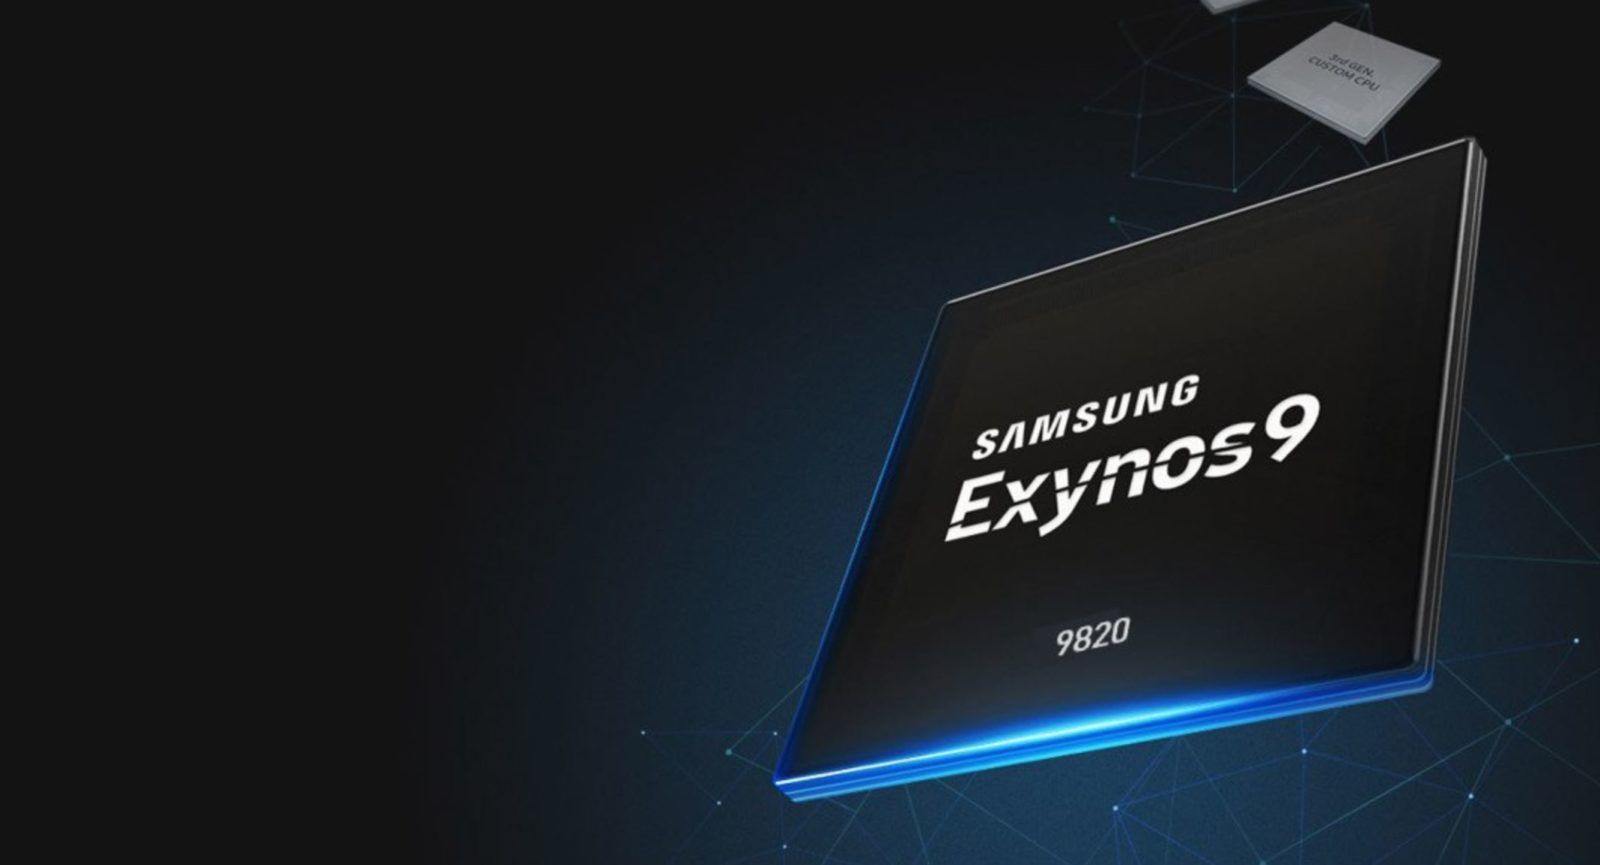 ชิป Samsung Exynos 9820 อาจมาพร้อมกับซีพียู 3 สถาปัตยกรรมทำงานร่วมกัน